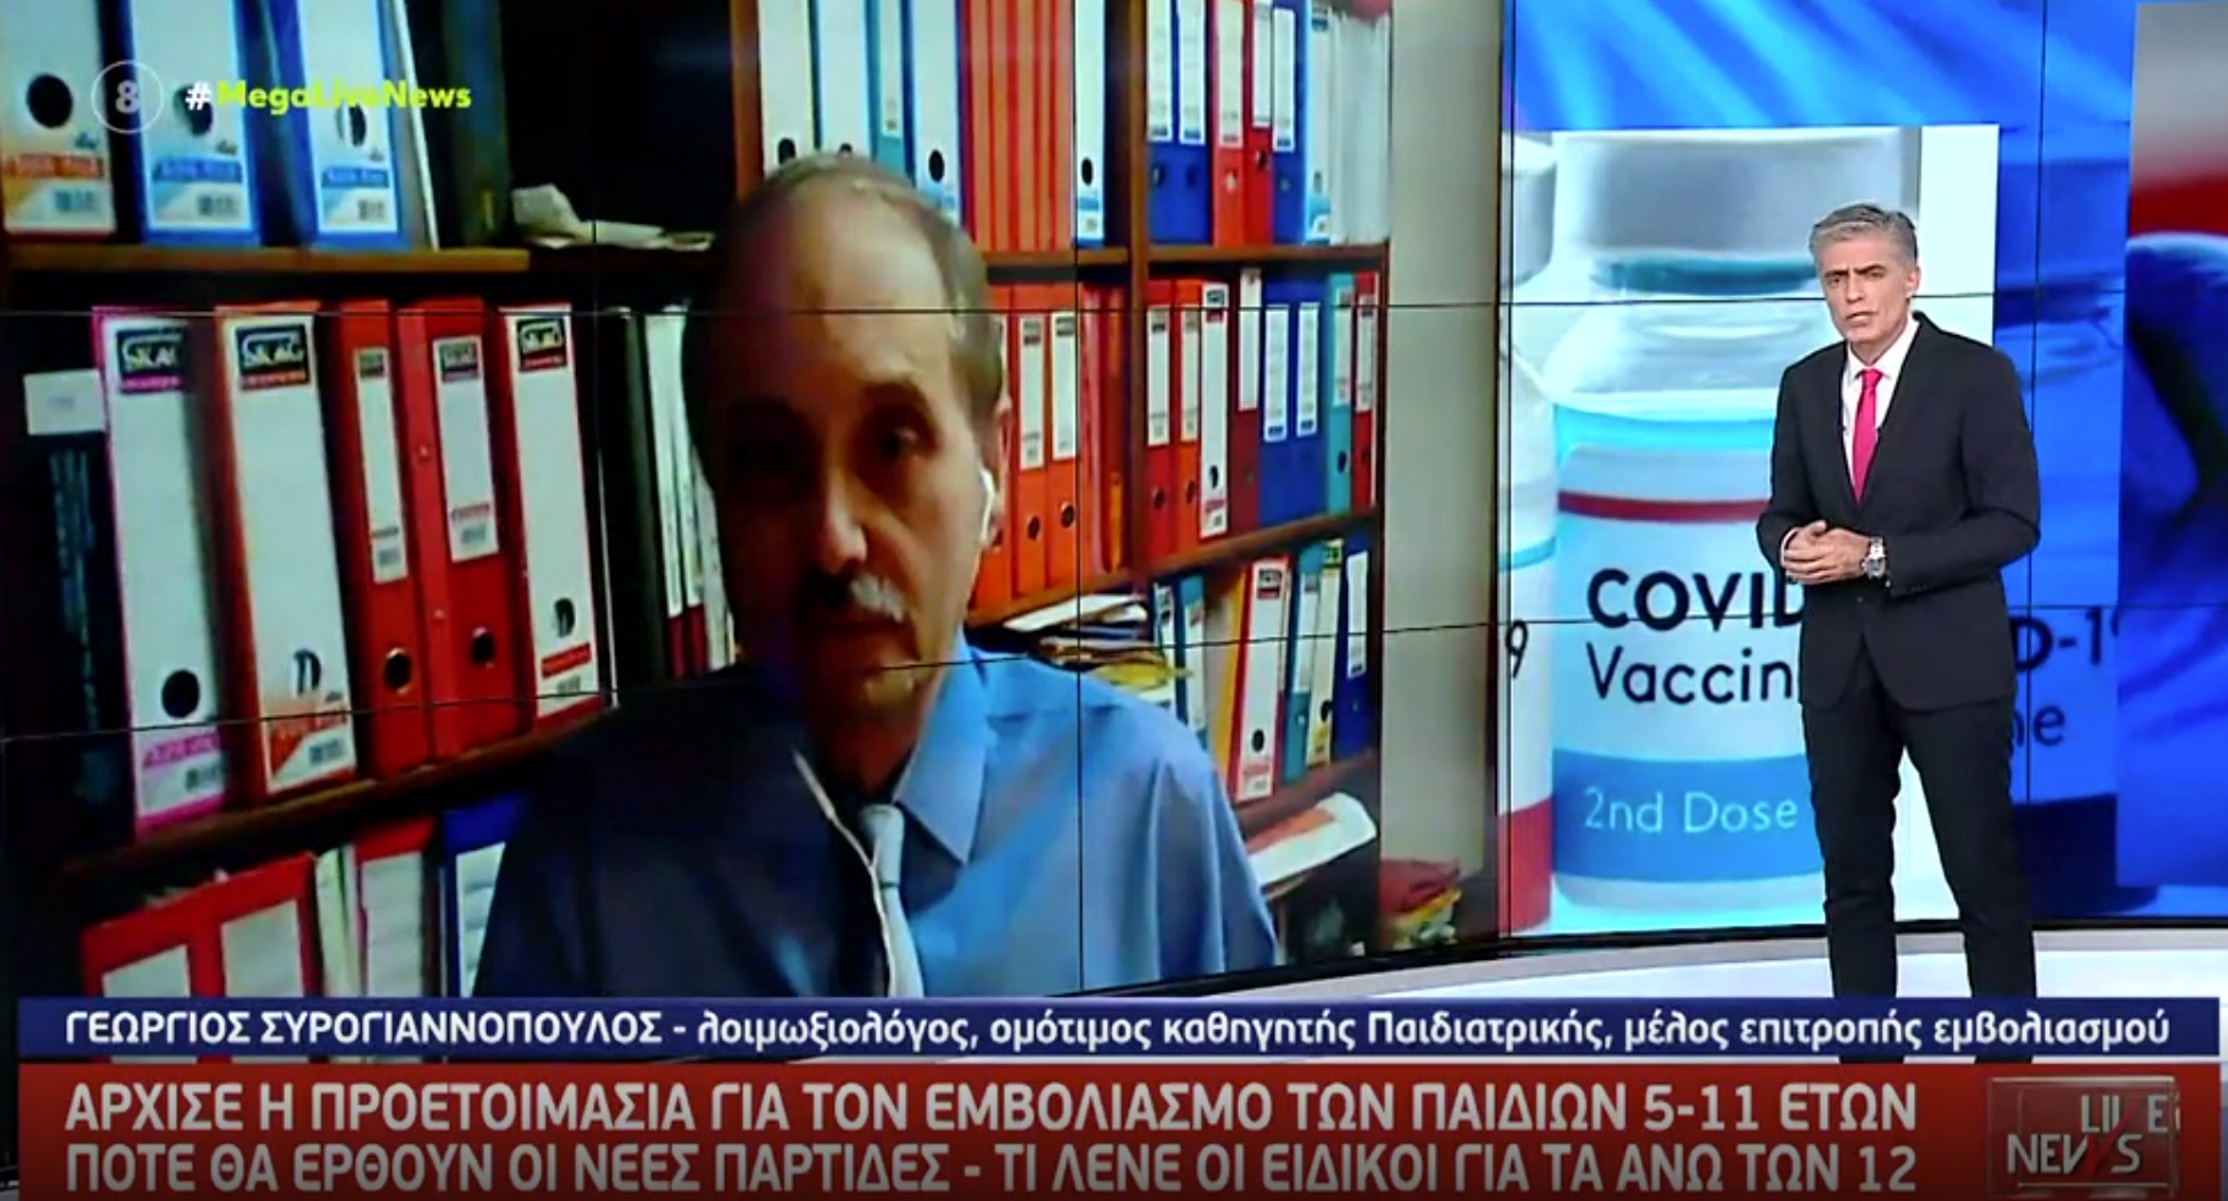 Κορονοϊός: Ασφαλή τα εμβόλια για τα παιδιά, διαβεβαιώνει ο Γεώργιος Συρογιαννόπουλος στο Live News